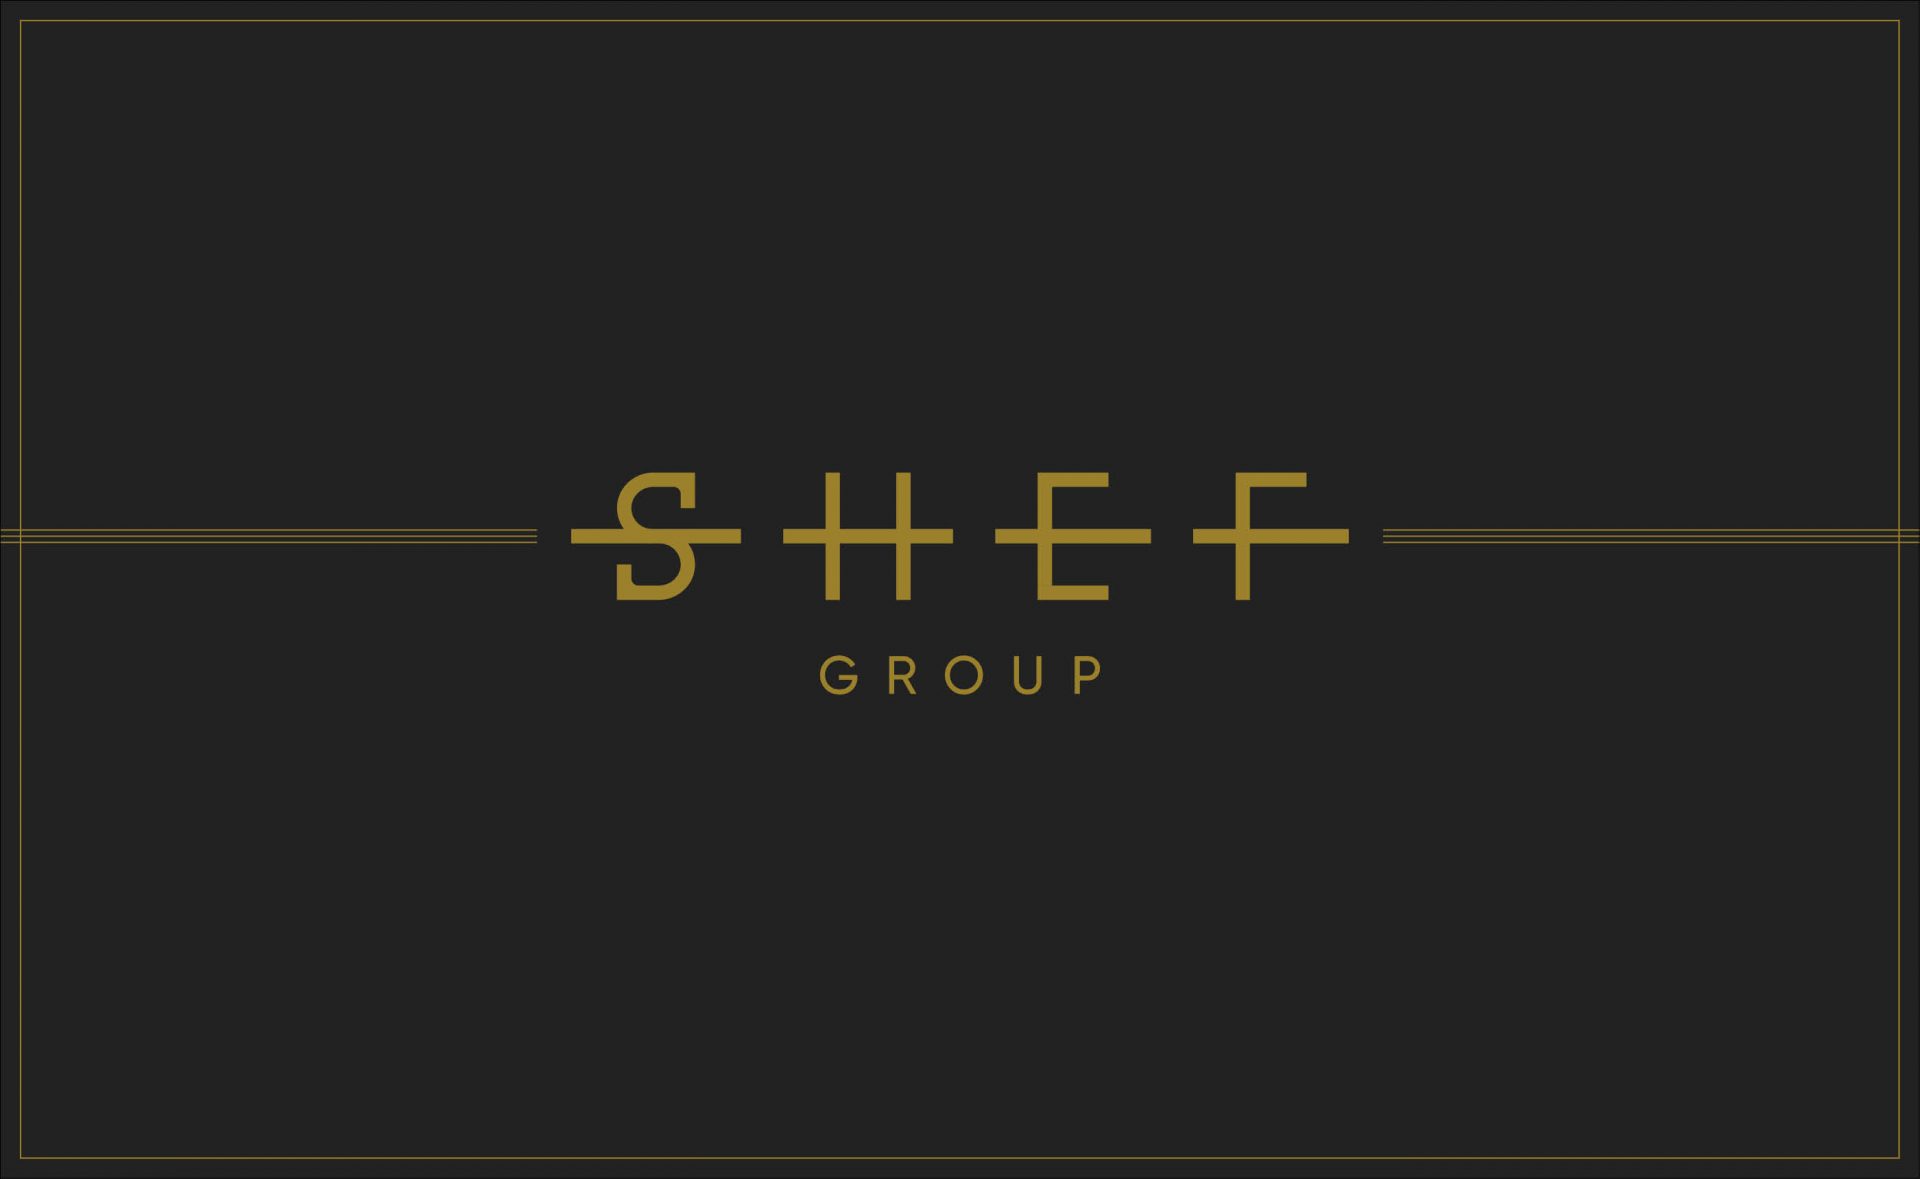 SHEF Group